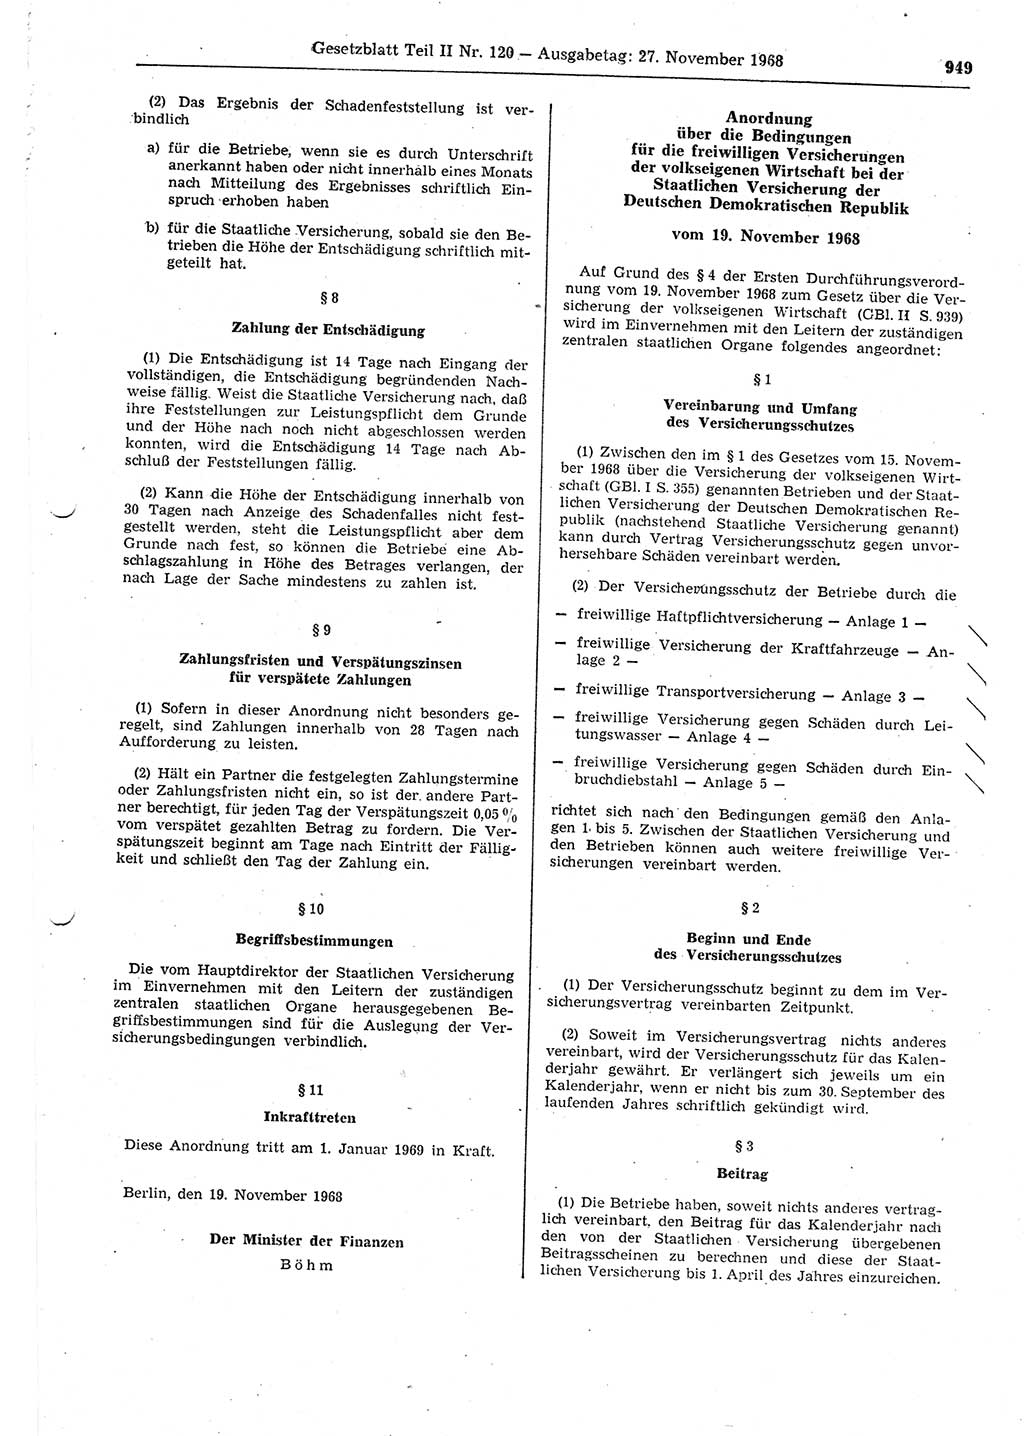 Gesetzblatt (GBl.) der Deutschen Demokratischen Republik (DDR) Teil ⅠⅠ 1968, Seite 949 (GBl. DDR ⅠⅠ 1968, S. 949)